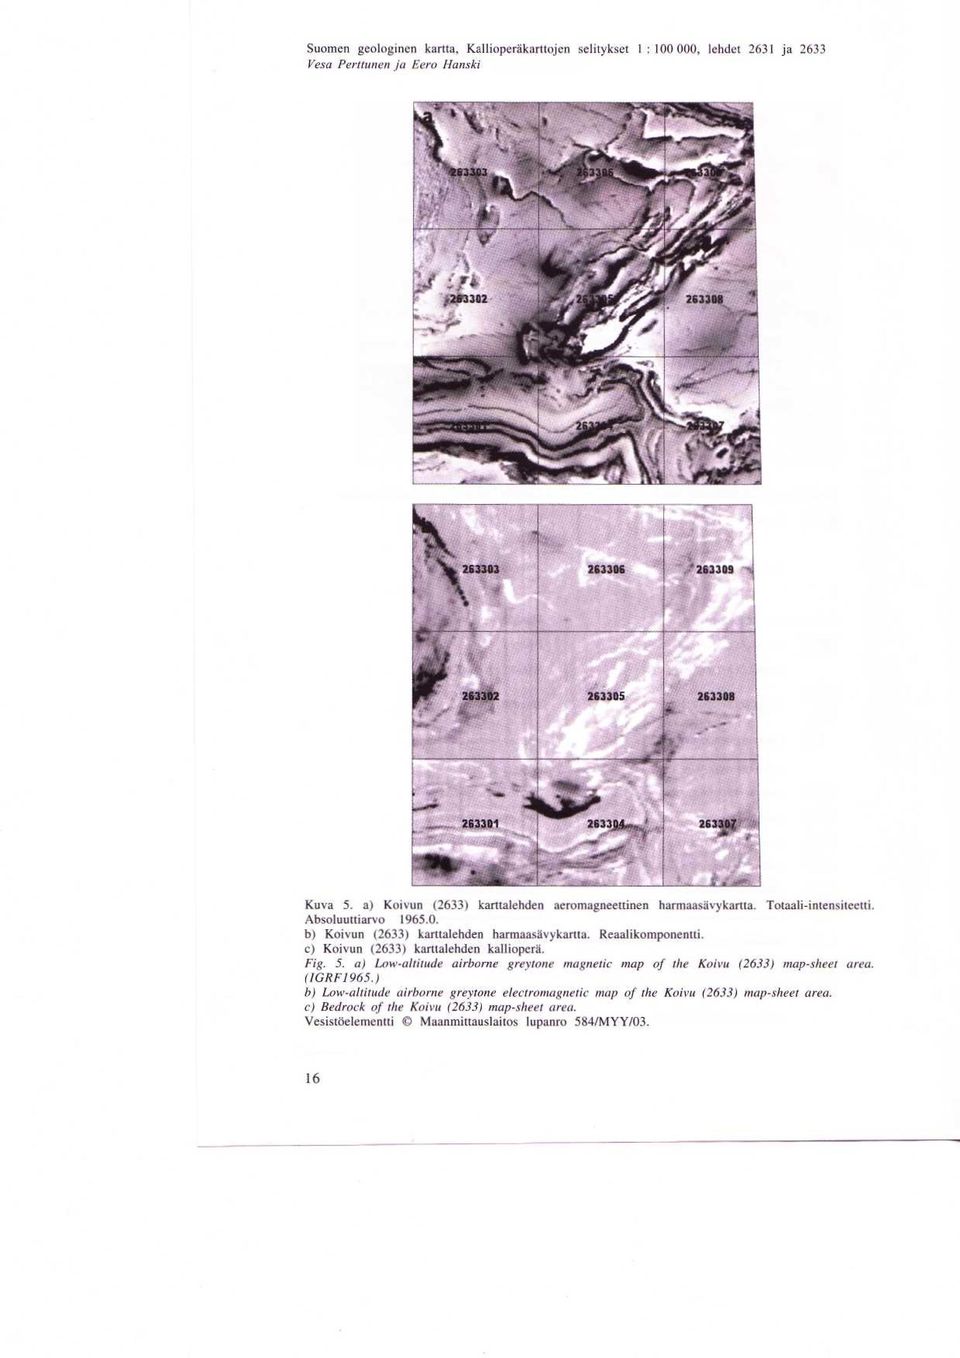 Reaalikomponentti. c) Koivun (2633) karttalehden kalliopera. Fig. 5. a) Low-altitude airborne greytone magnetic map of the Koivu (2633) map-sheet area. (IGRF1965.